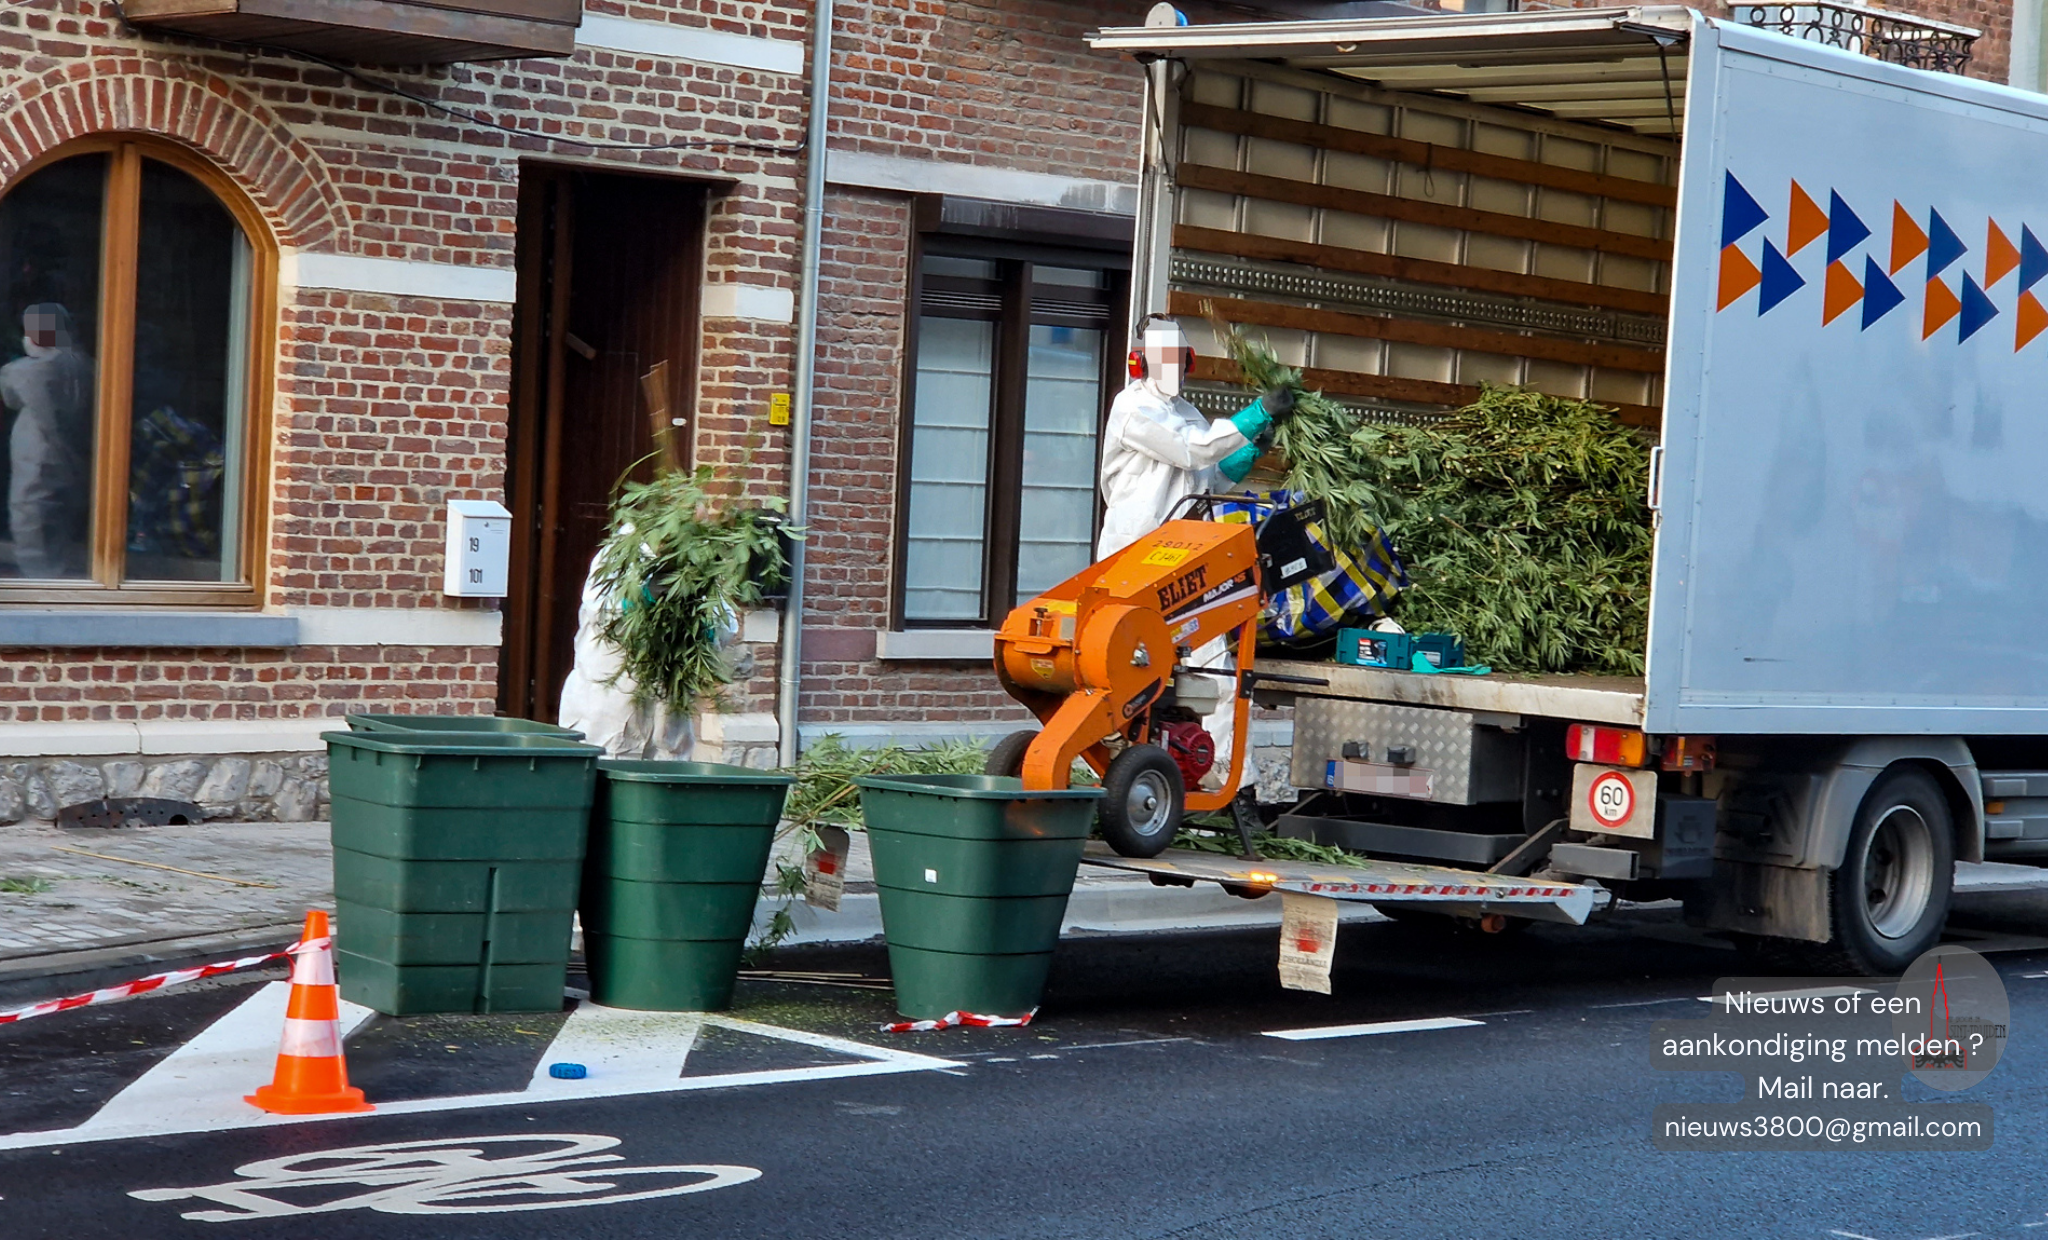 Twee wietplantages opgerold vandaag in Sint-Truiden 